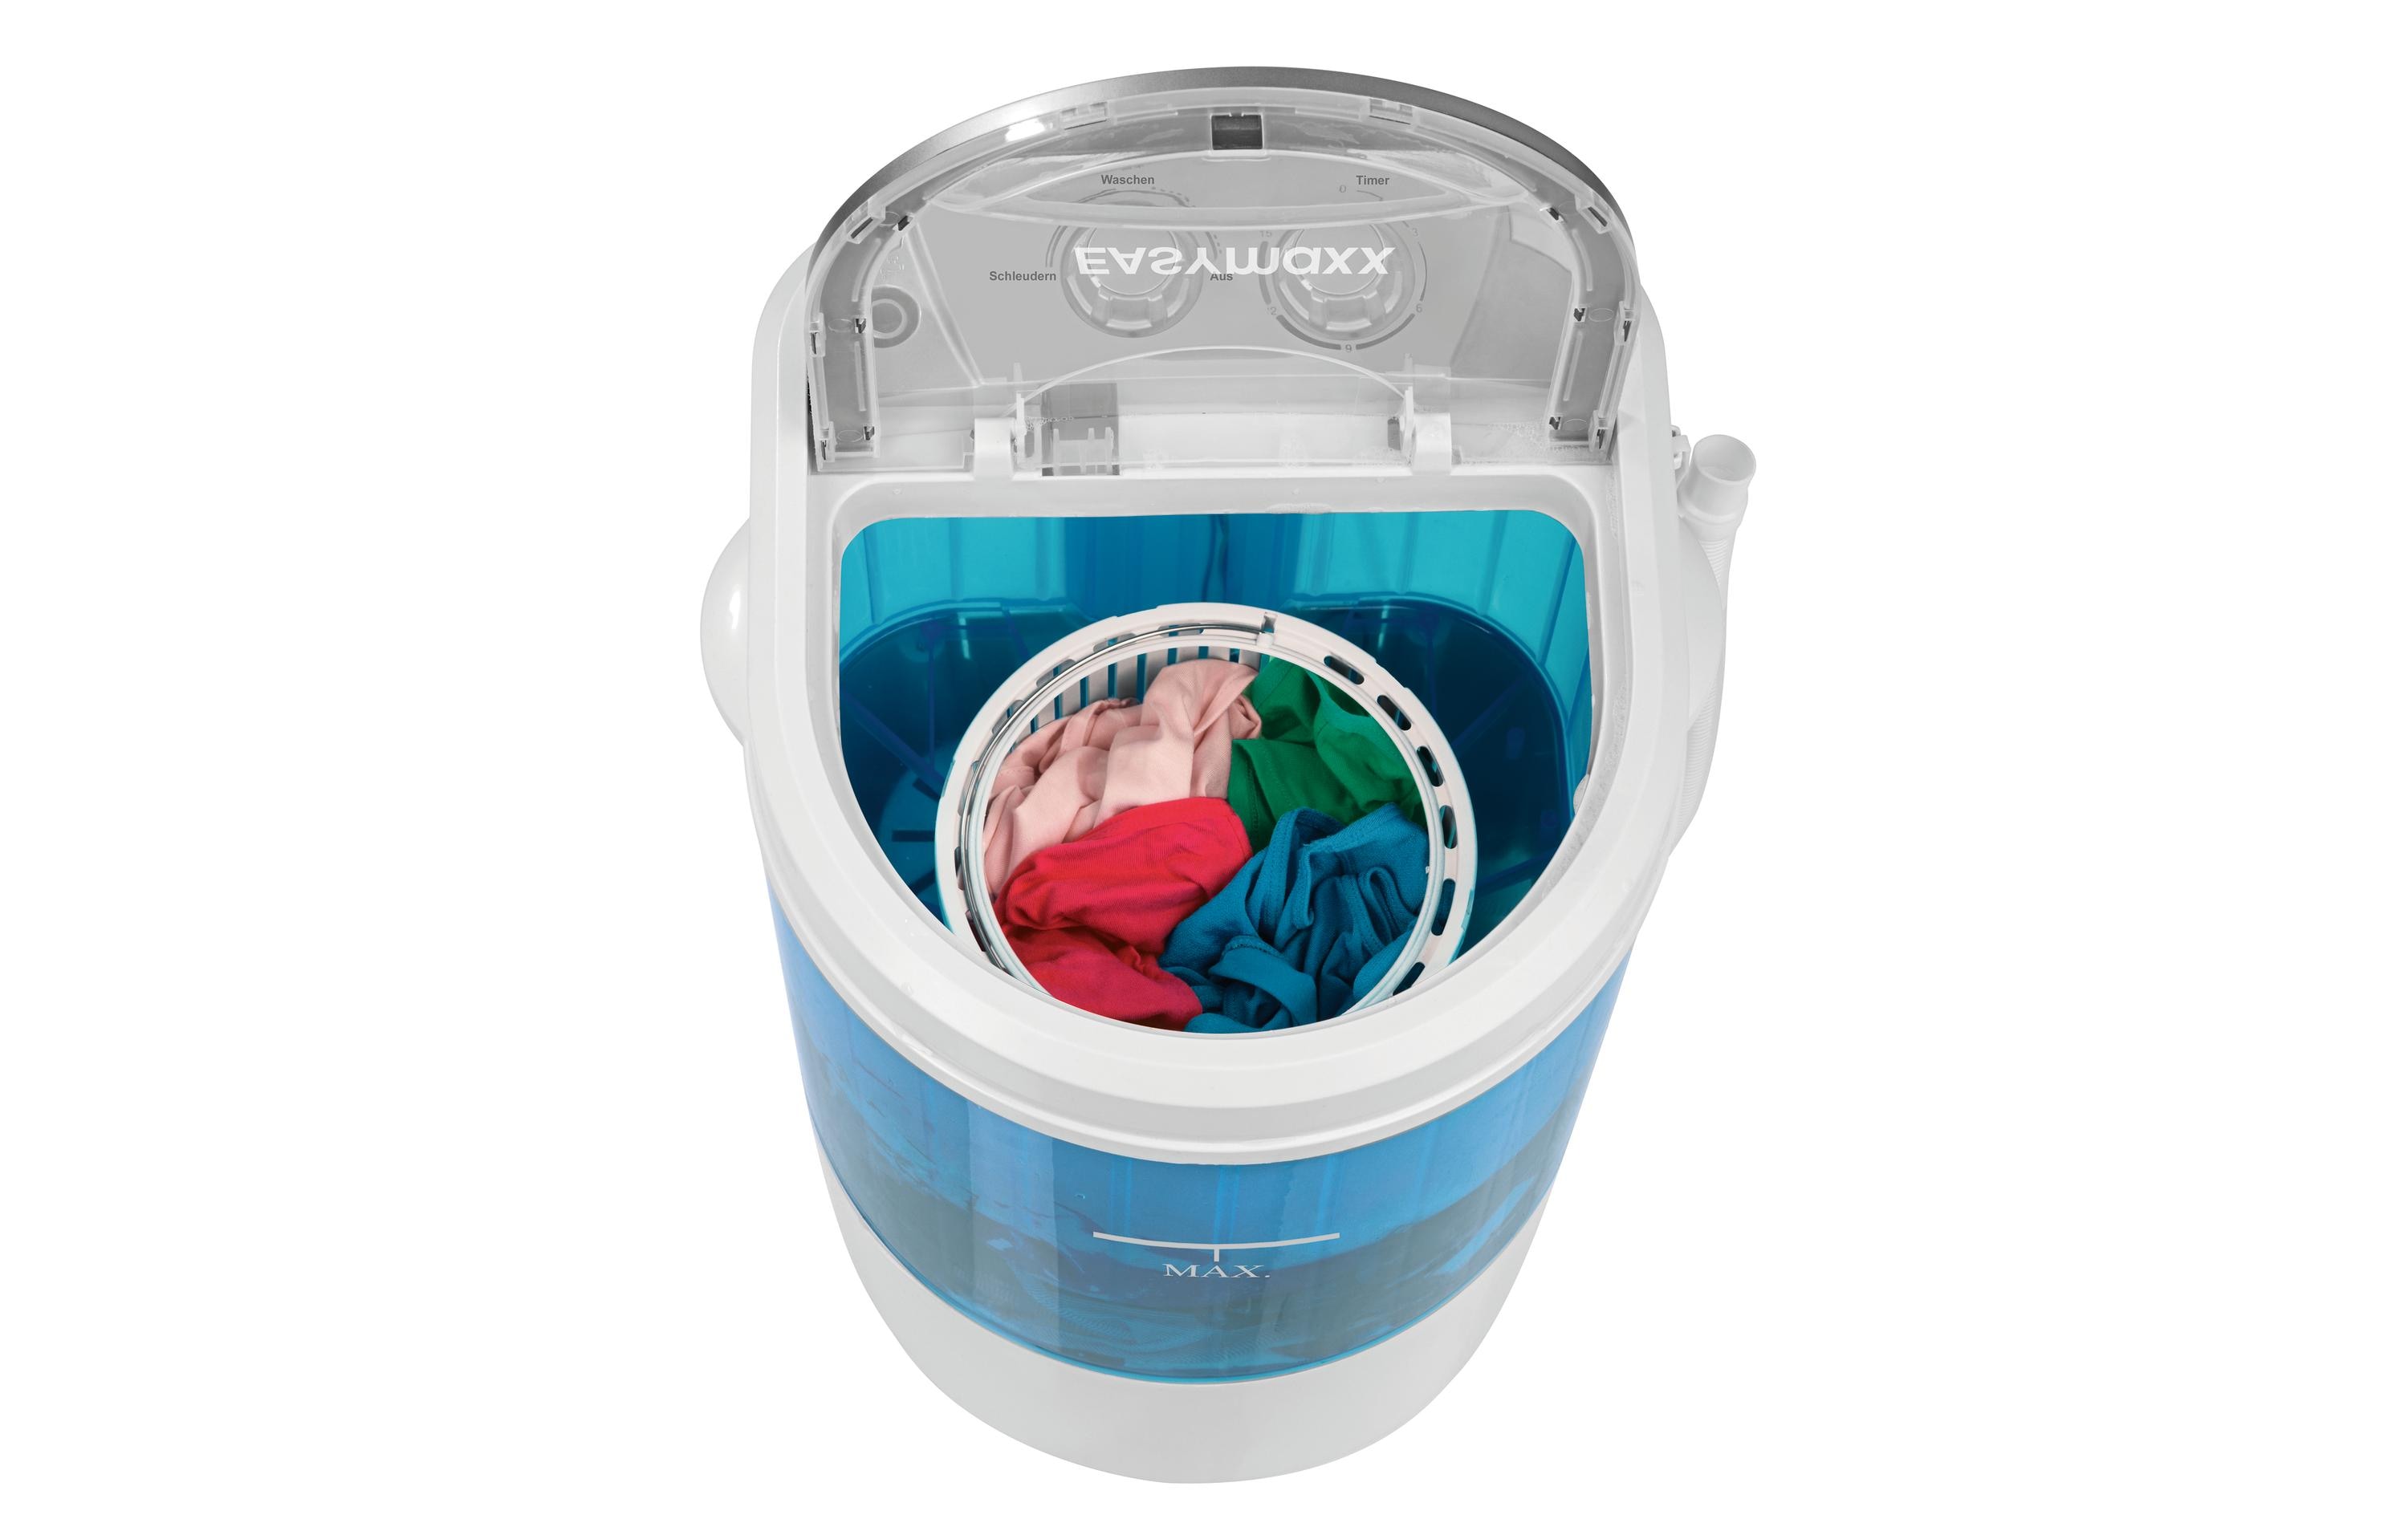 EASYmaxx Mini Waschmaschine 07475 Oben